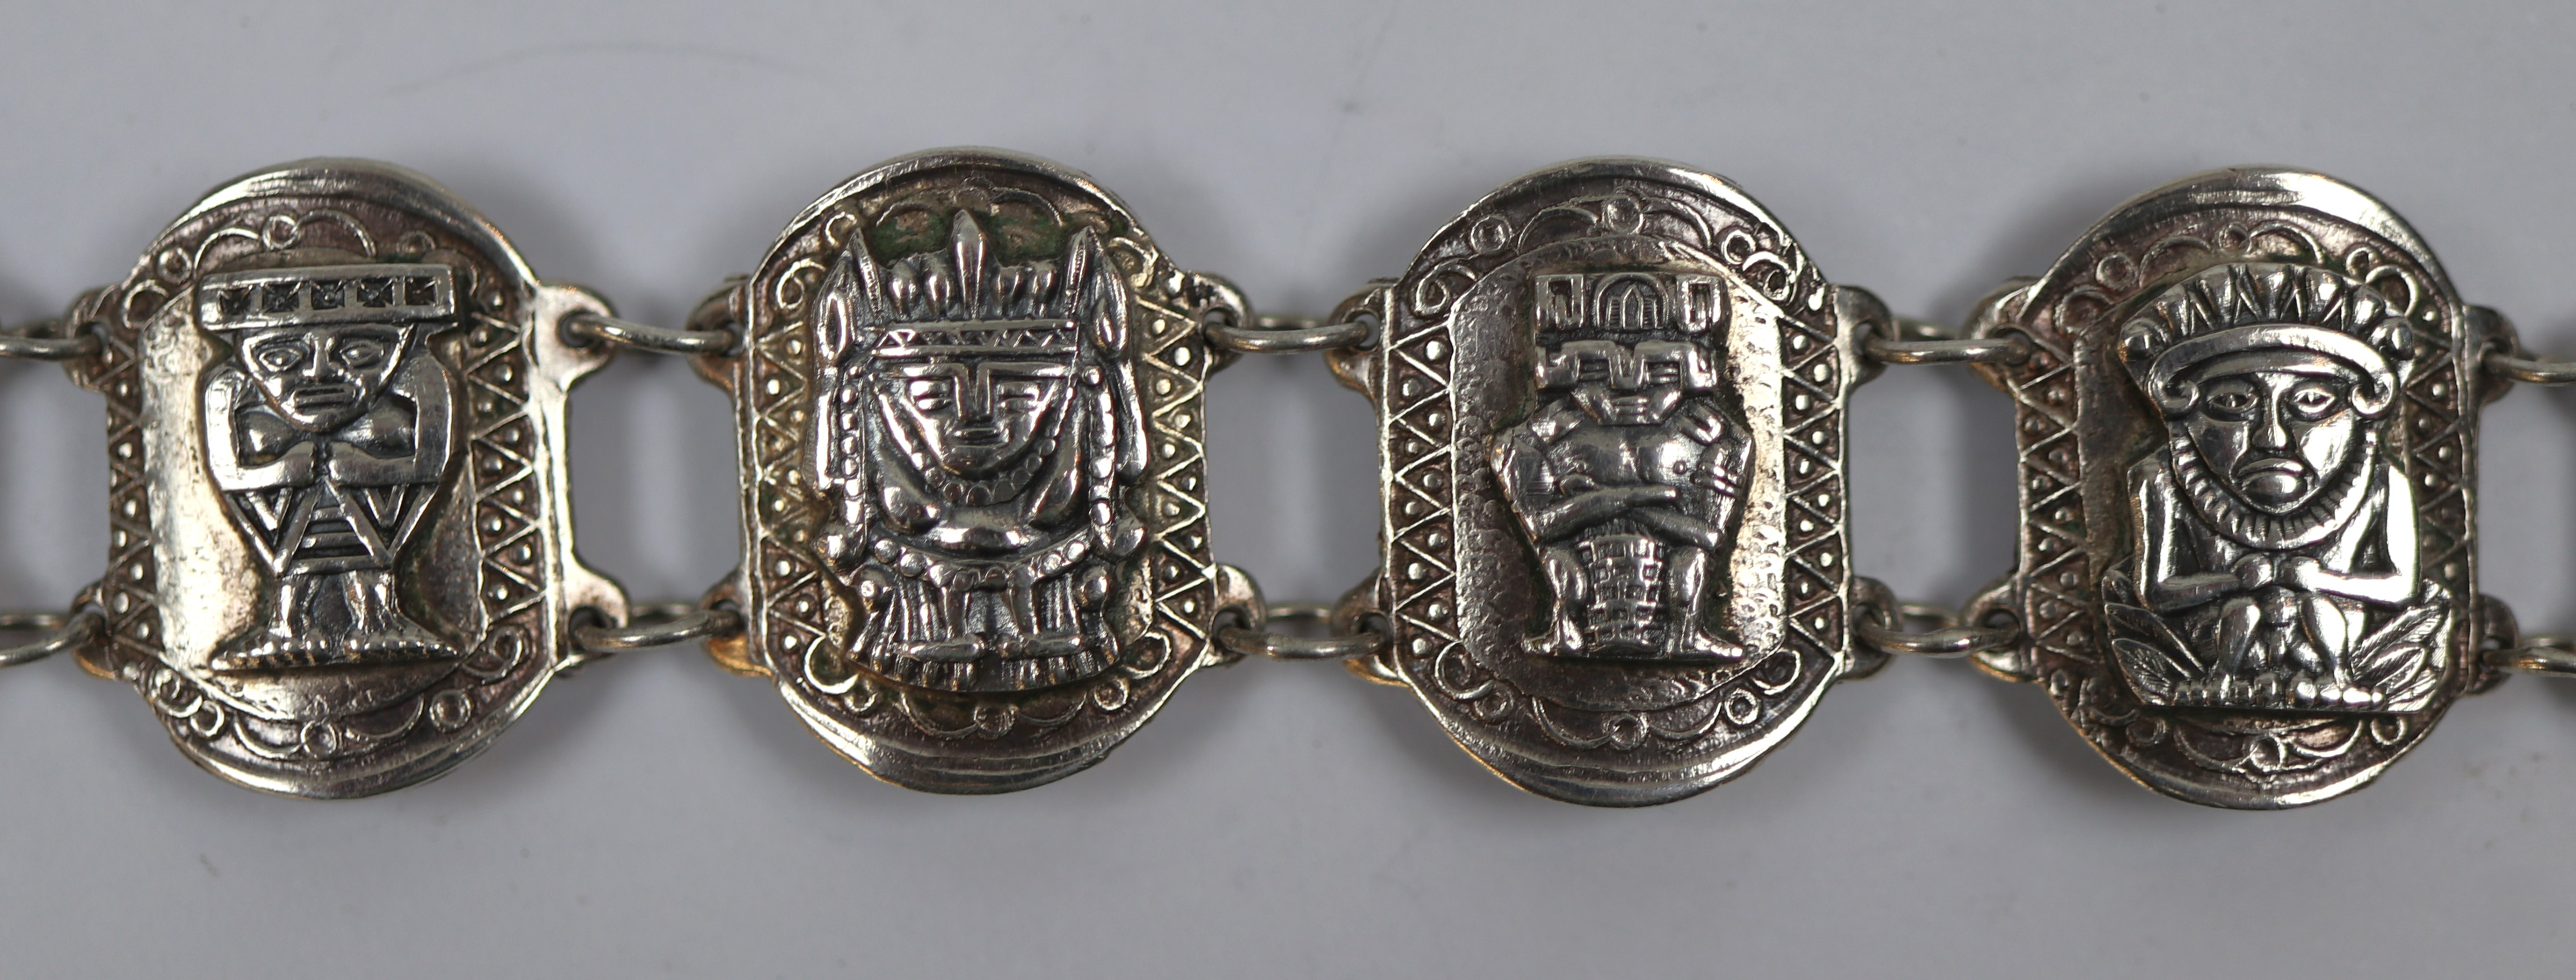 Vintage Aztec / Mayan design silver bracelet - Image 2 of 2